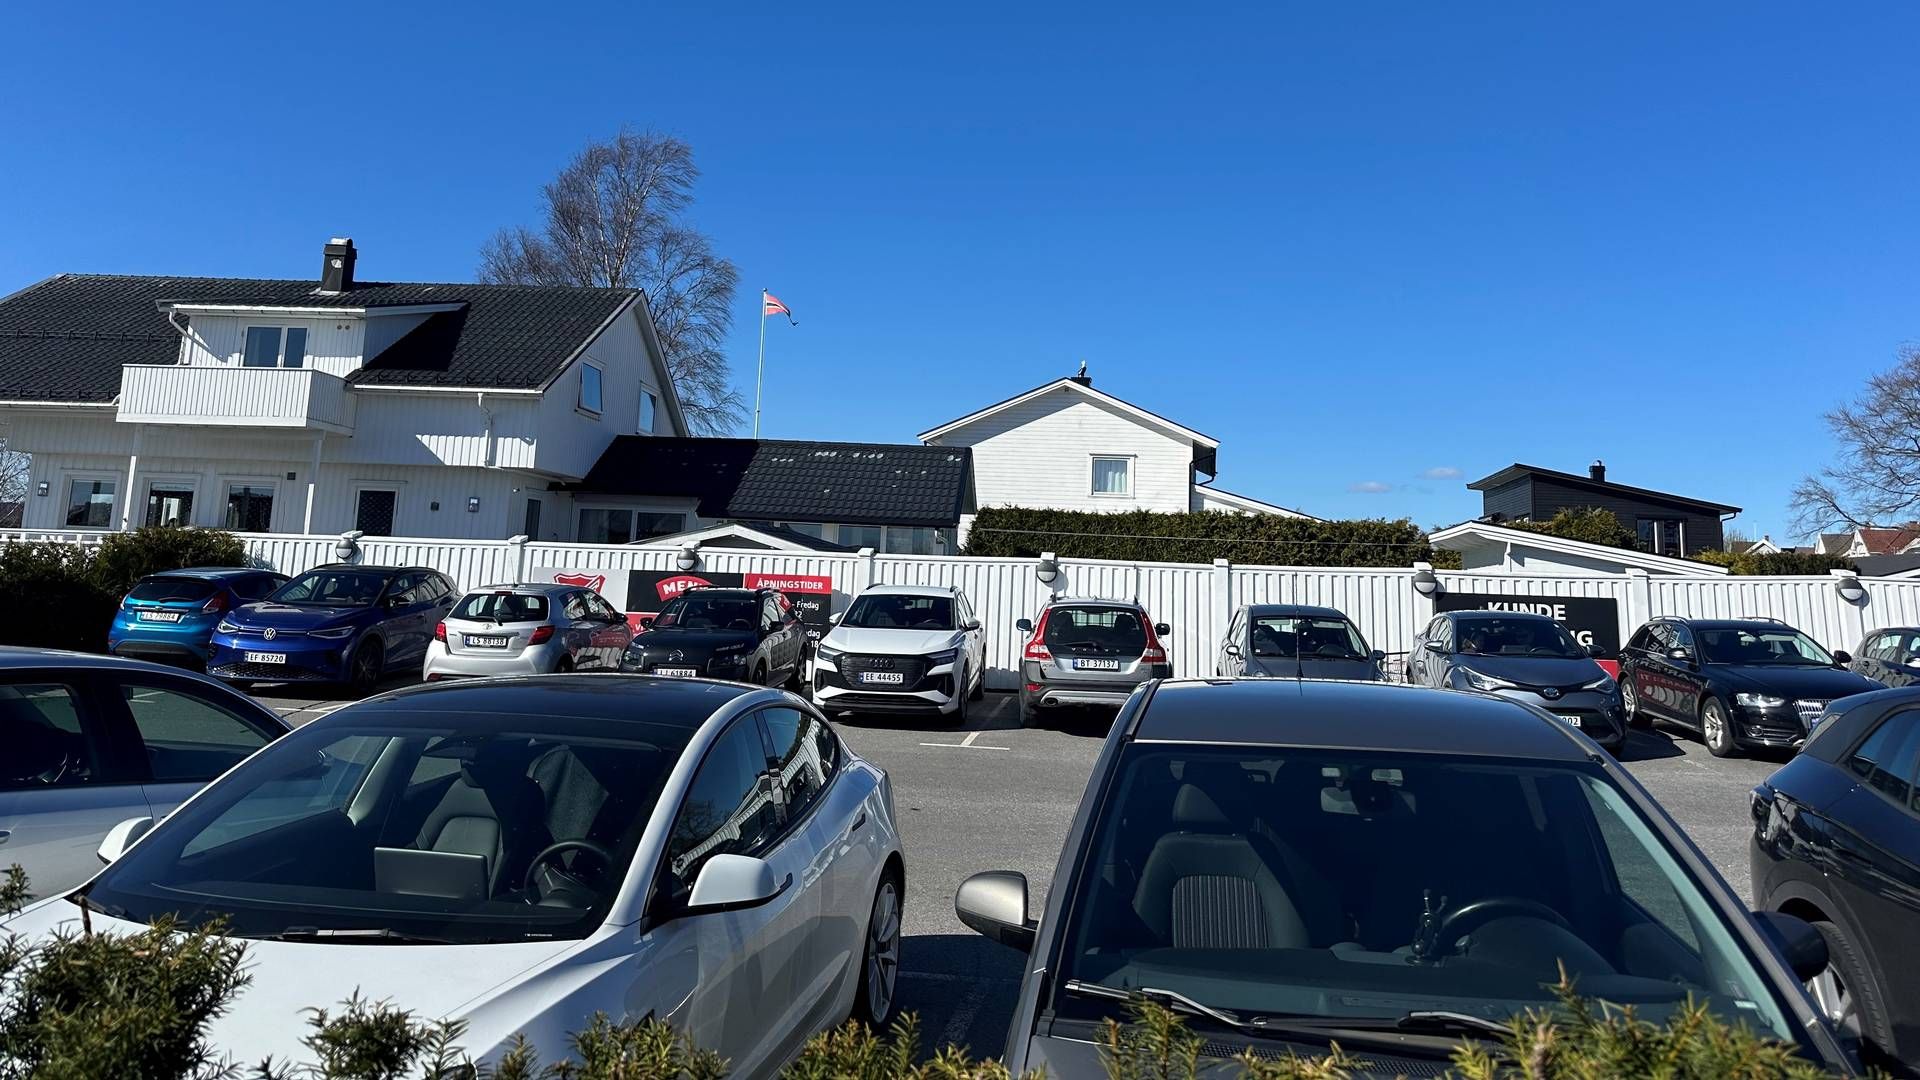 TRAVELT: Meny Blinken på Gloppe i Larvik har fått stadig mer å gjøre på søndager, med øvrige dagligvarebutikker i omegn som ikke får ha åpent på søndager. | Foto: HandelsWatch